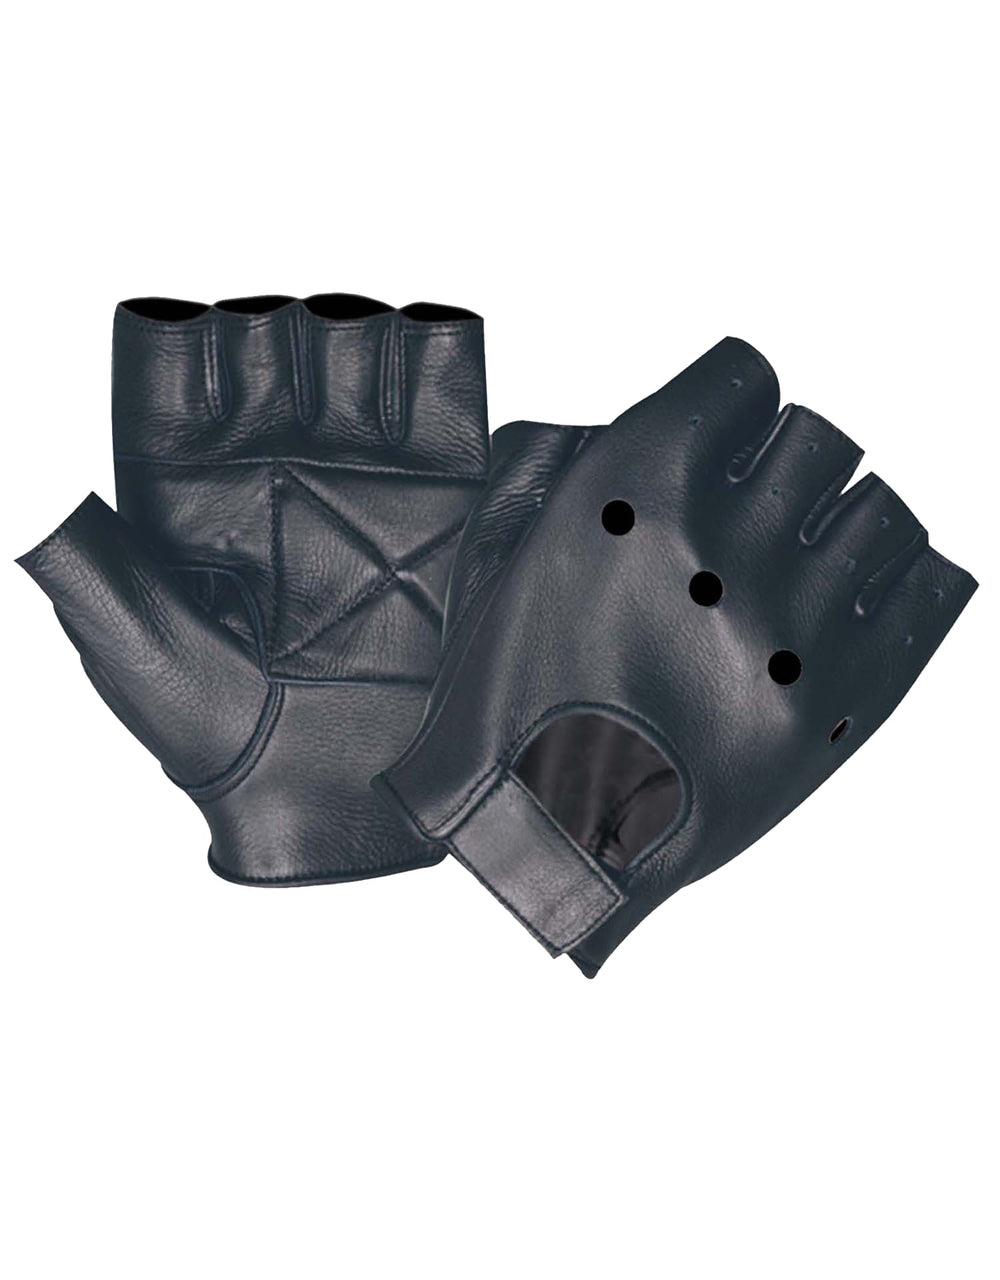 Men's Fingerless Ultra Motorcycle Gloves